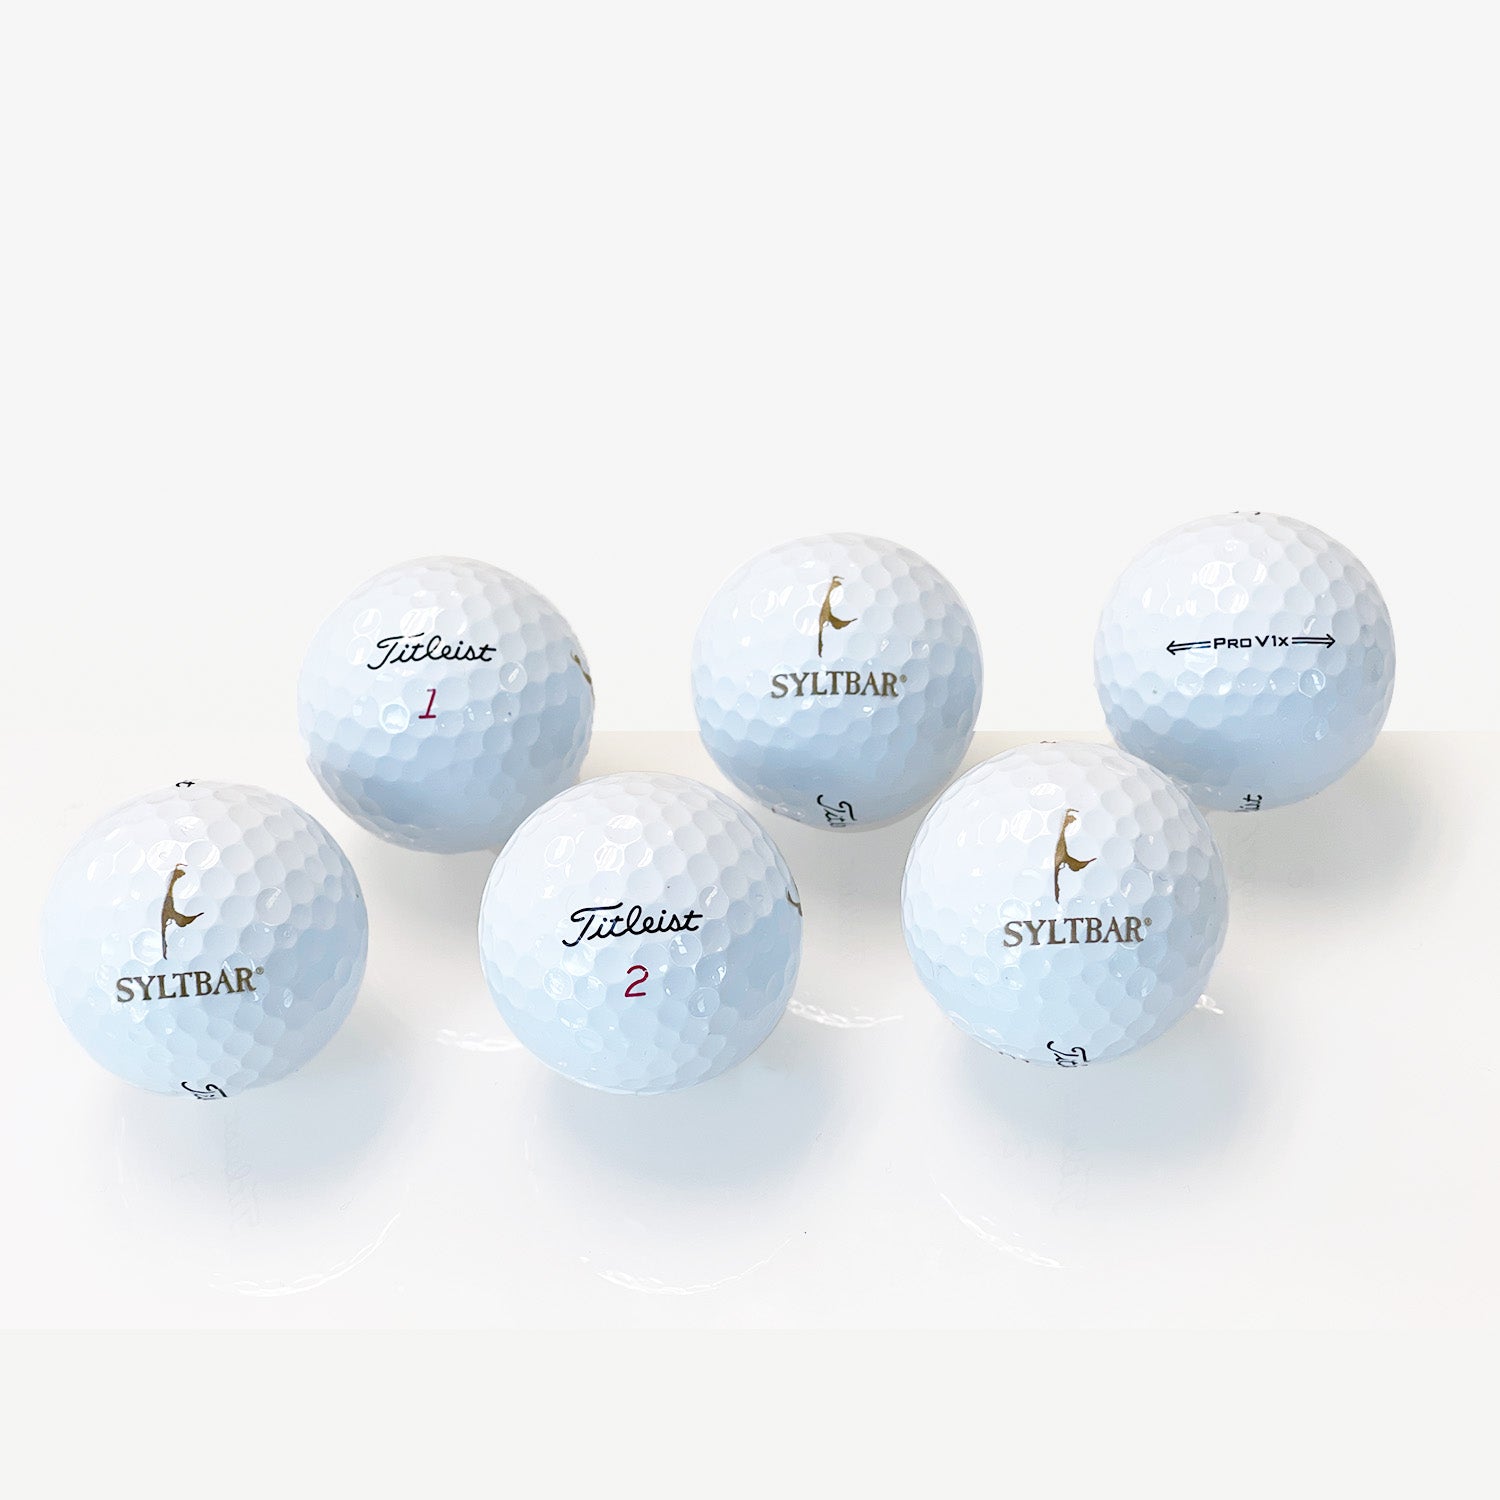 Under Par (Titleist Golf Balls Set of 6) – SYLTBAR.com